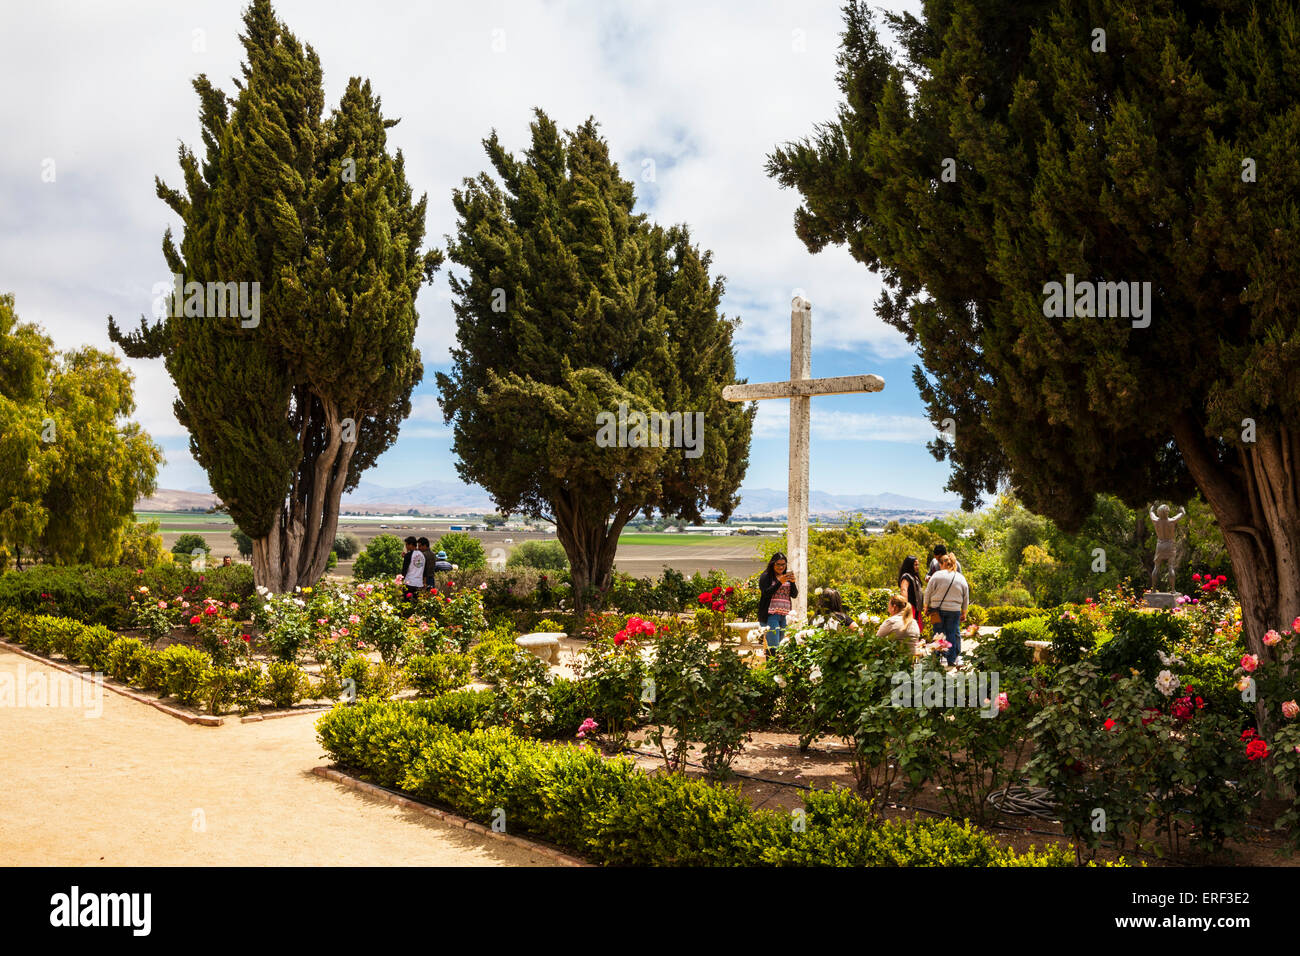 Le jardin de la Mission de San Juan Bautista en Californie Banque D'Images